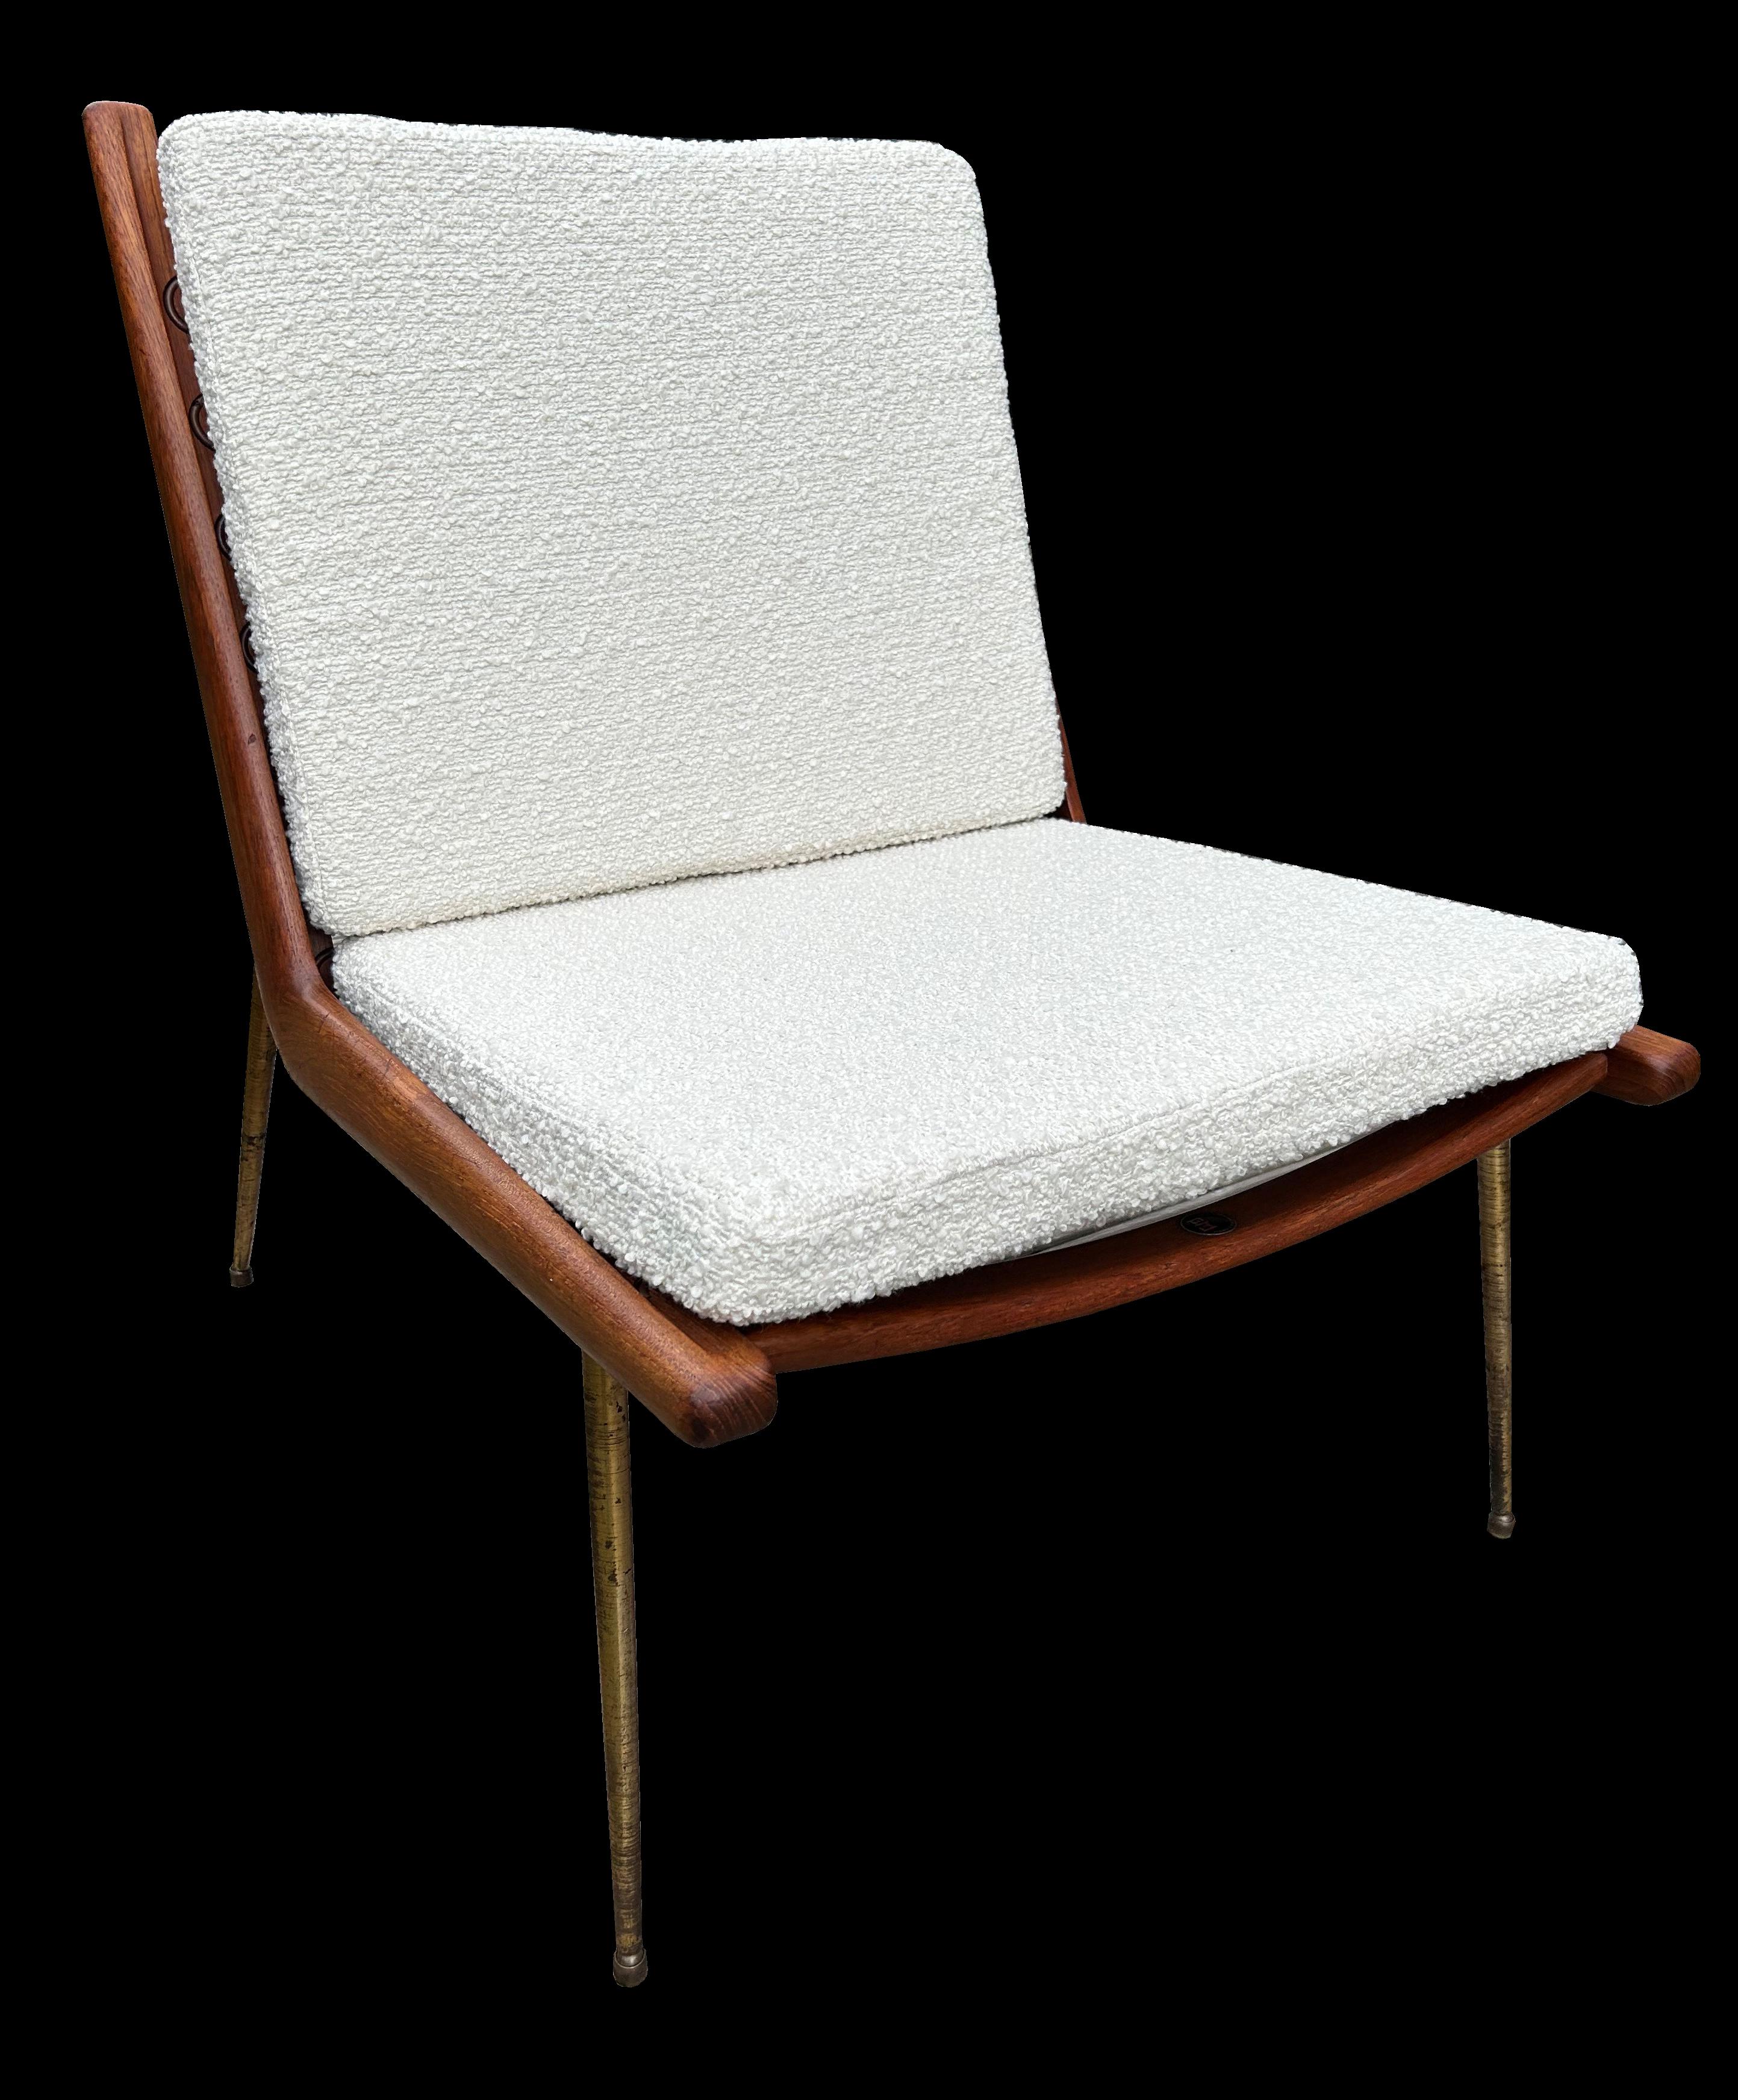 Il s'agit d'un très bon exemple original de cette chaise classique, fraîchement tapissée en boucle blanche.